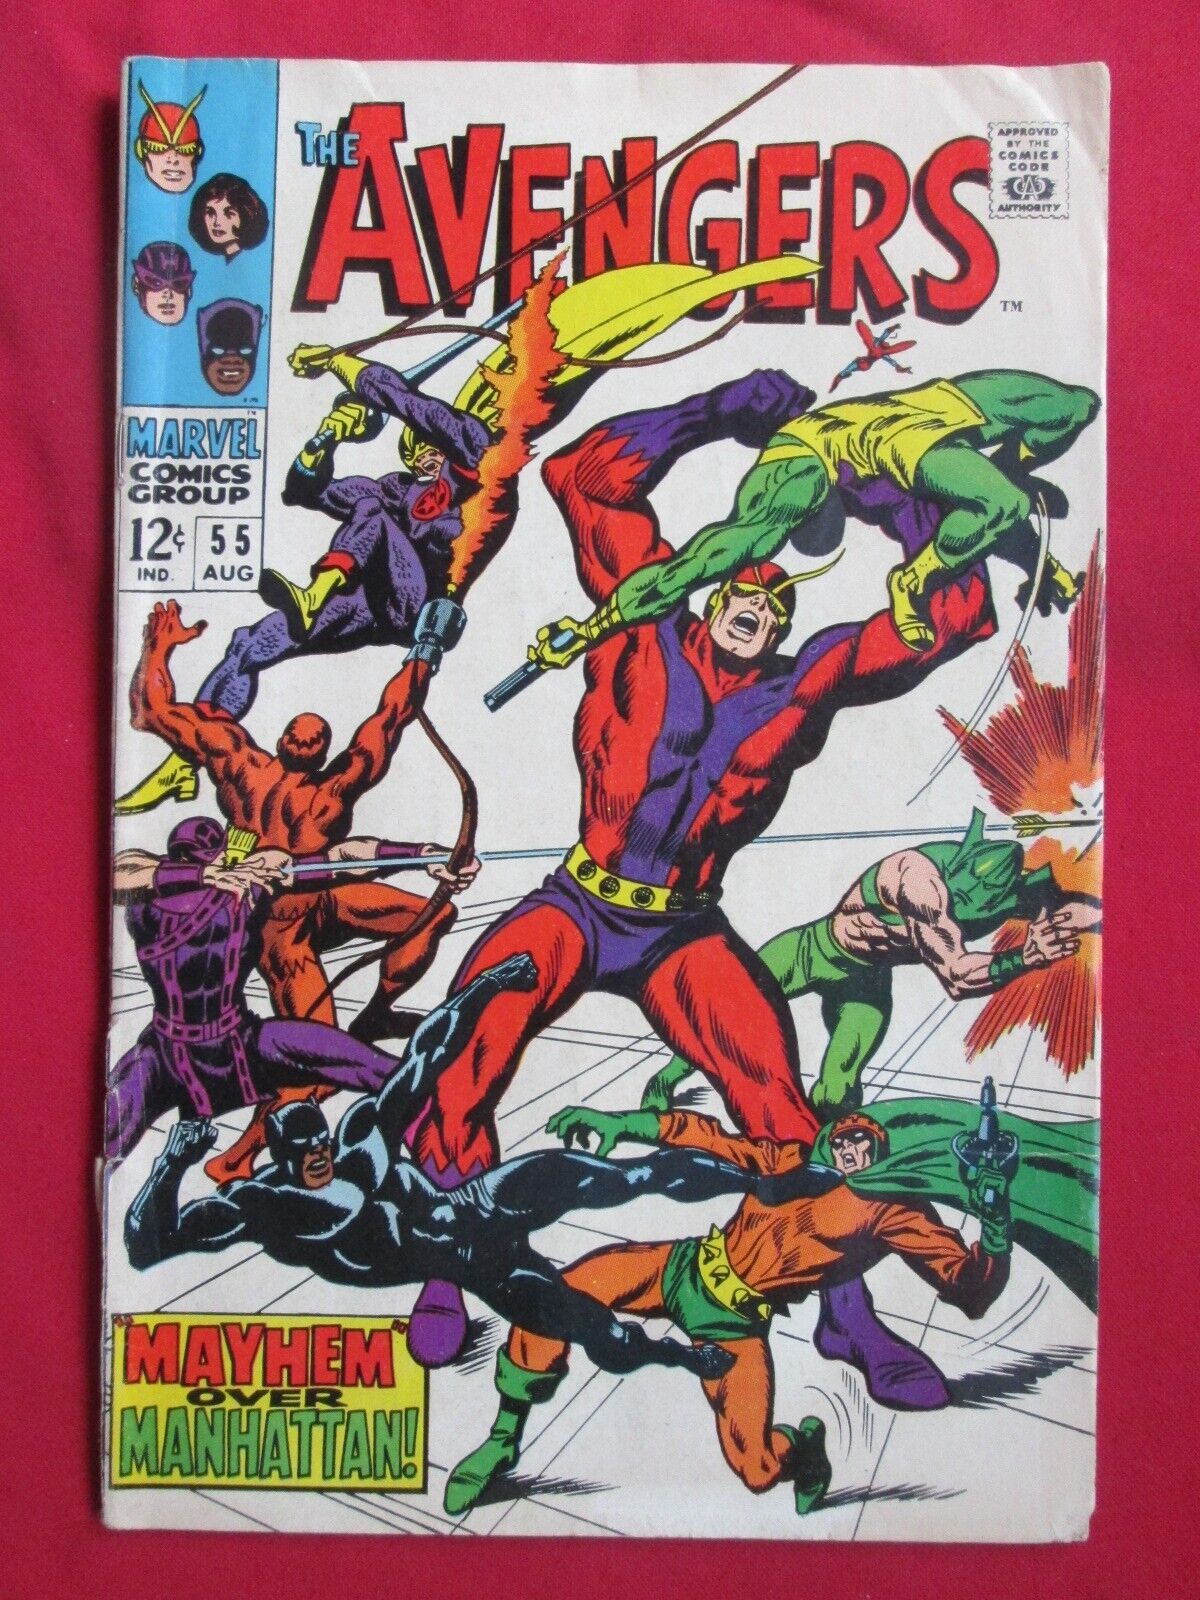 The Avengers #55 Marvel Comics 1968 1st full Ultron